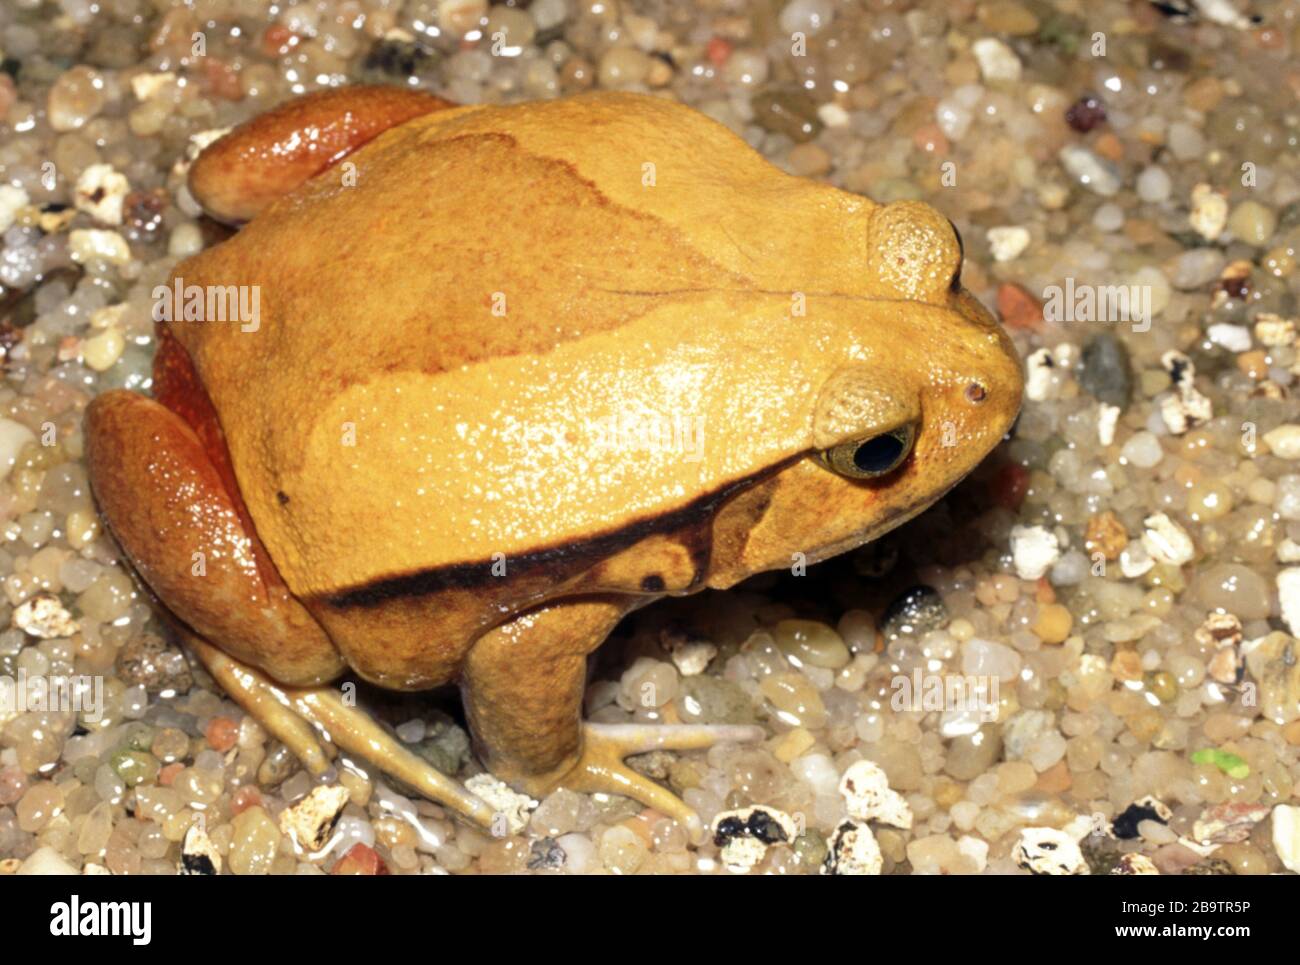 False tomato frog, Dyscophus guineti Stock Photo